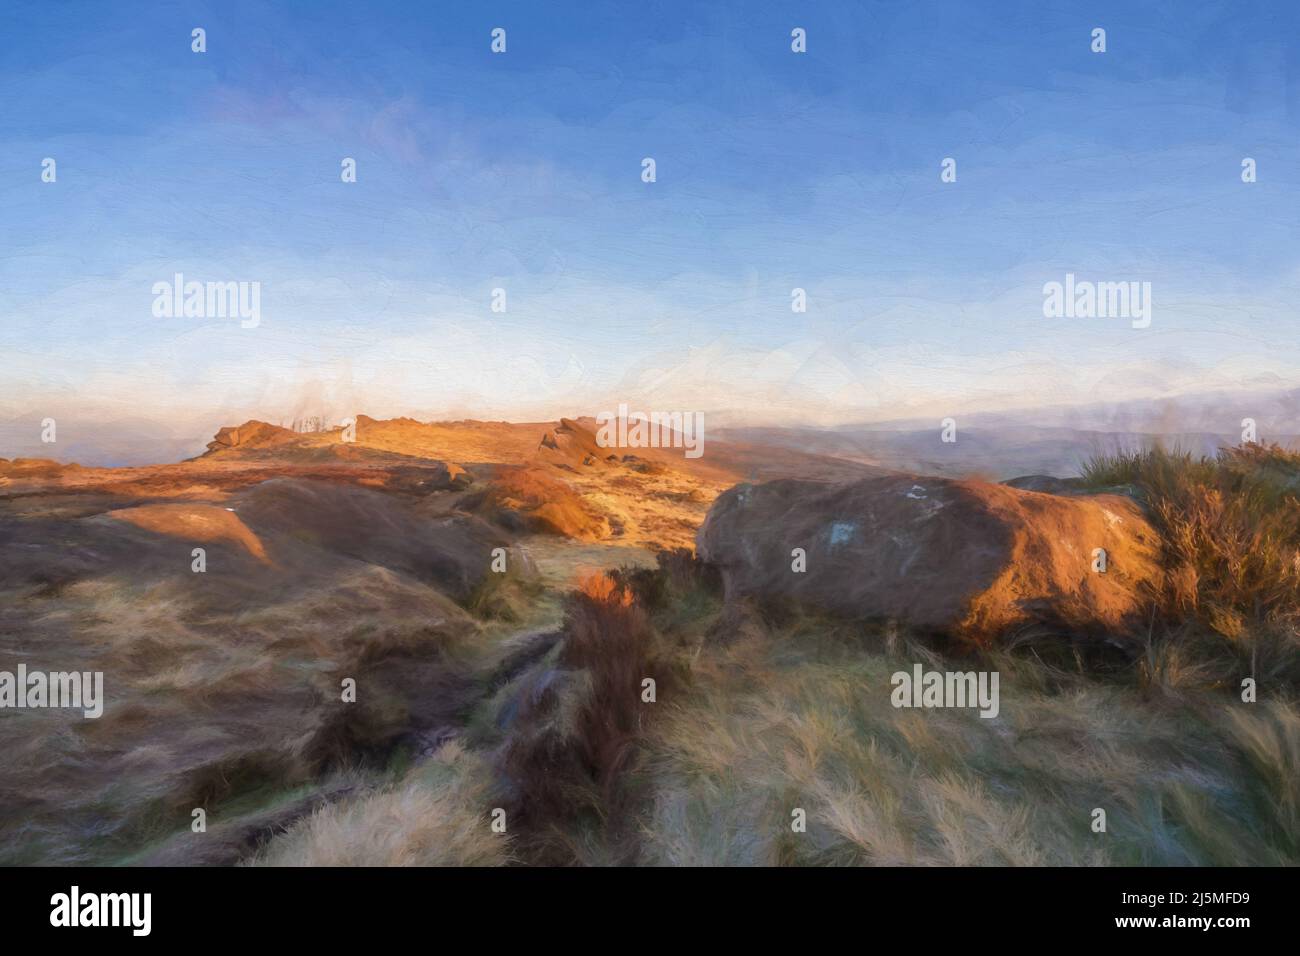 Poster des beaux-arts. Peinture numérique abstraite à l'huile des cafards, Staffordshire. Lever du soleil en hiver dans le parc national de Peak District, Royaume-Uni. Banque D'Images